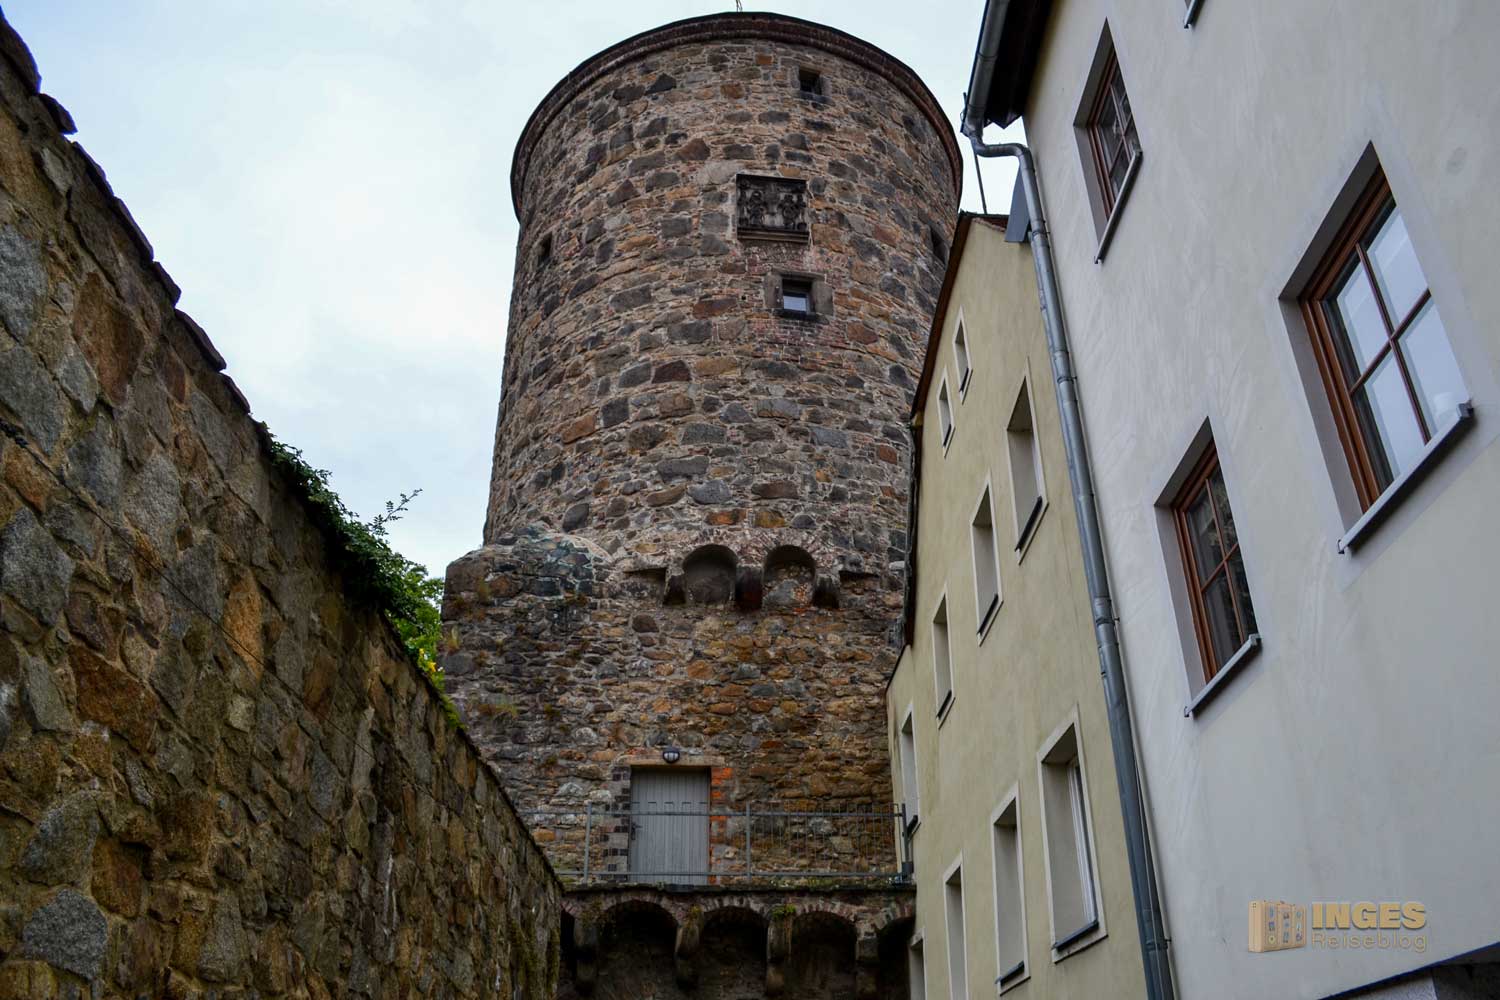 Nikolaiturm in Bautzen